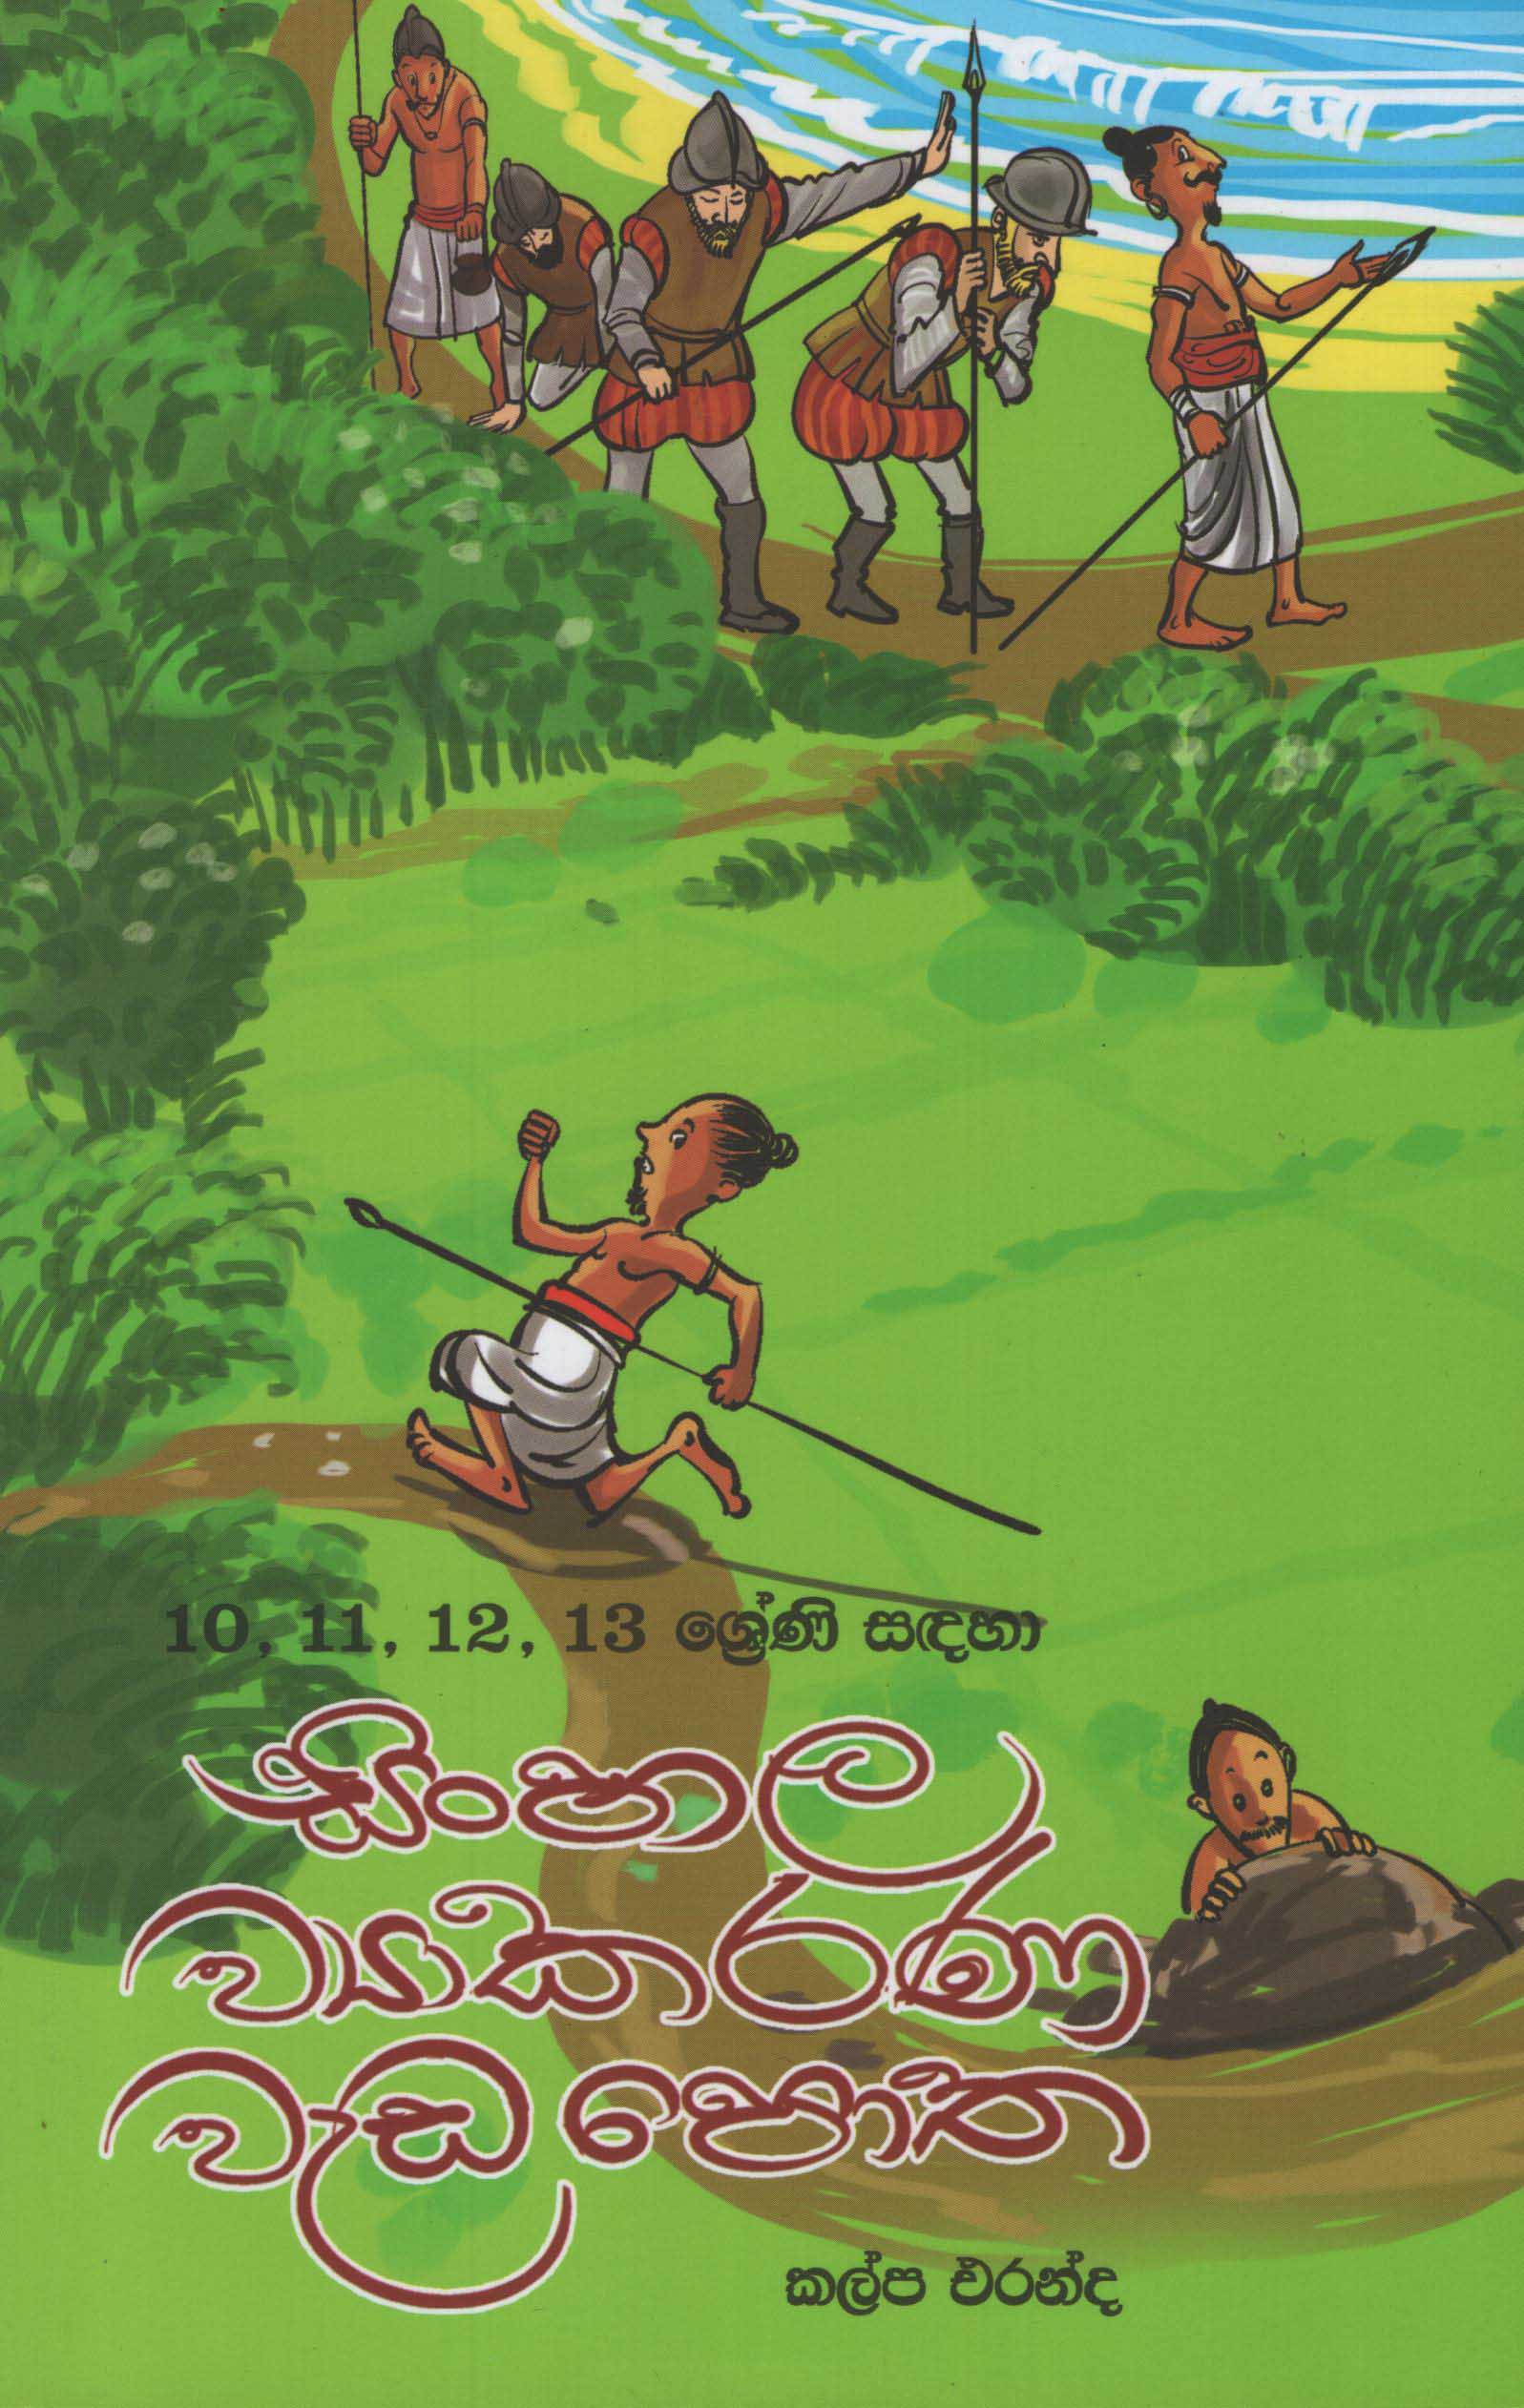 10 11 12 13 Shreni Sandaha Sinhala Viyakarana Wada Potha